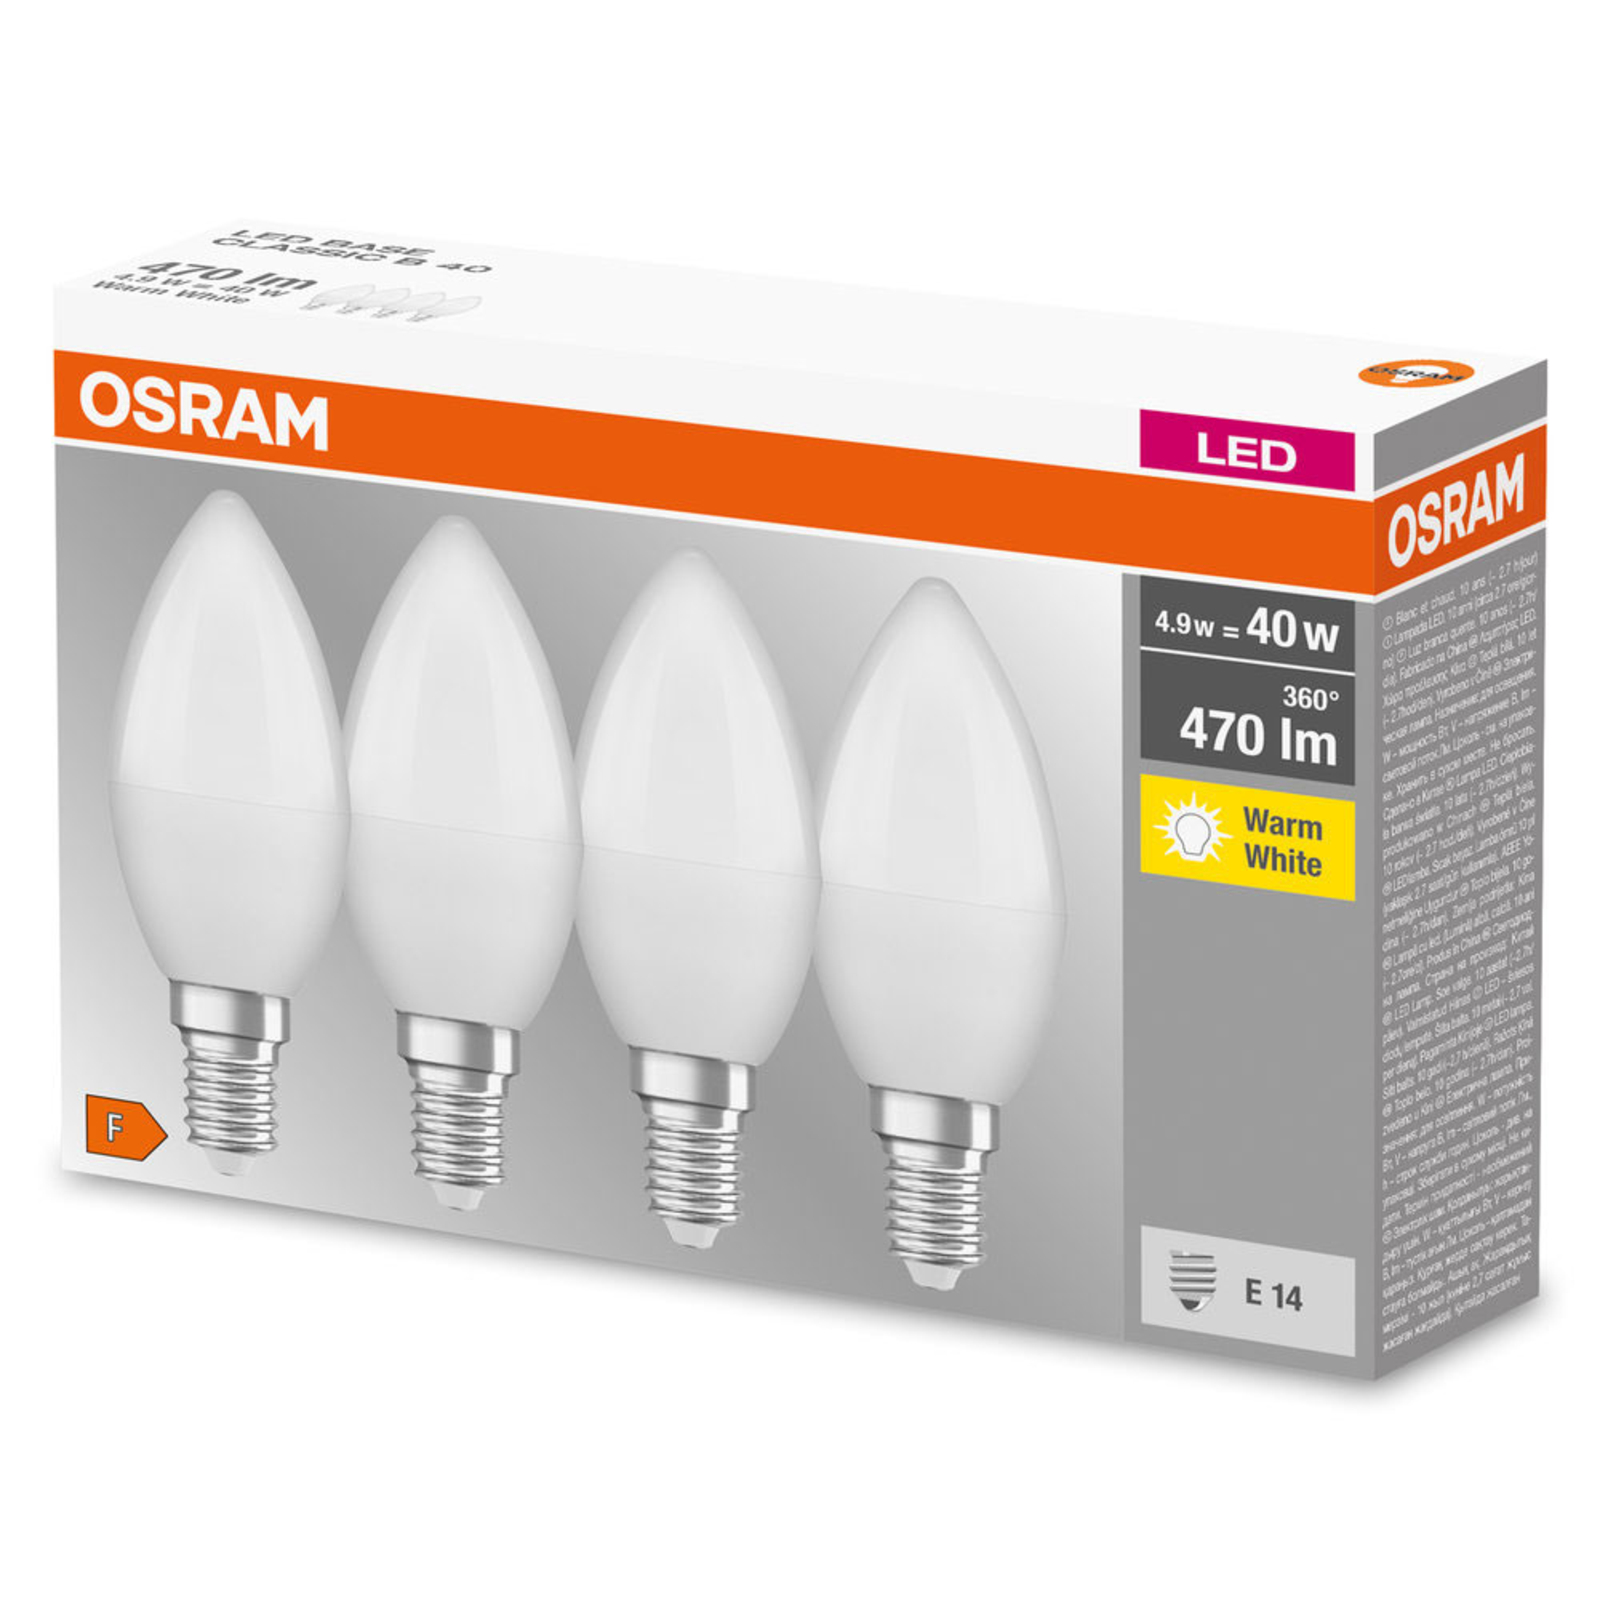 OSRAM LED candela E14 Base Retro 4,9W 4x 2.700K